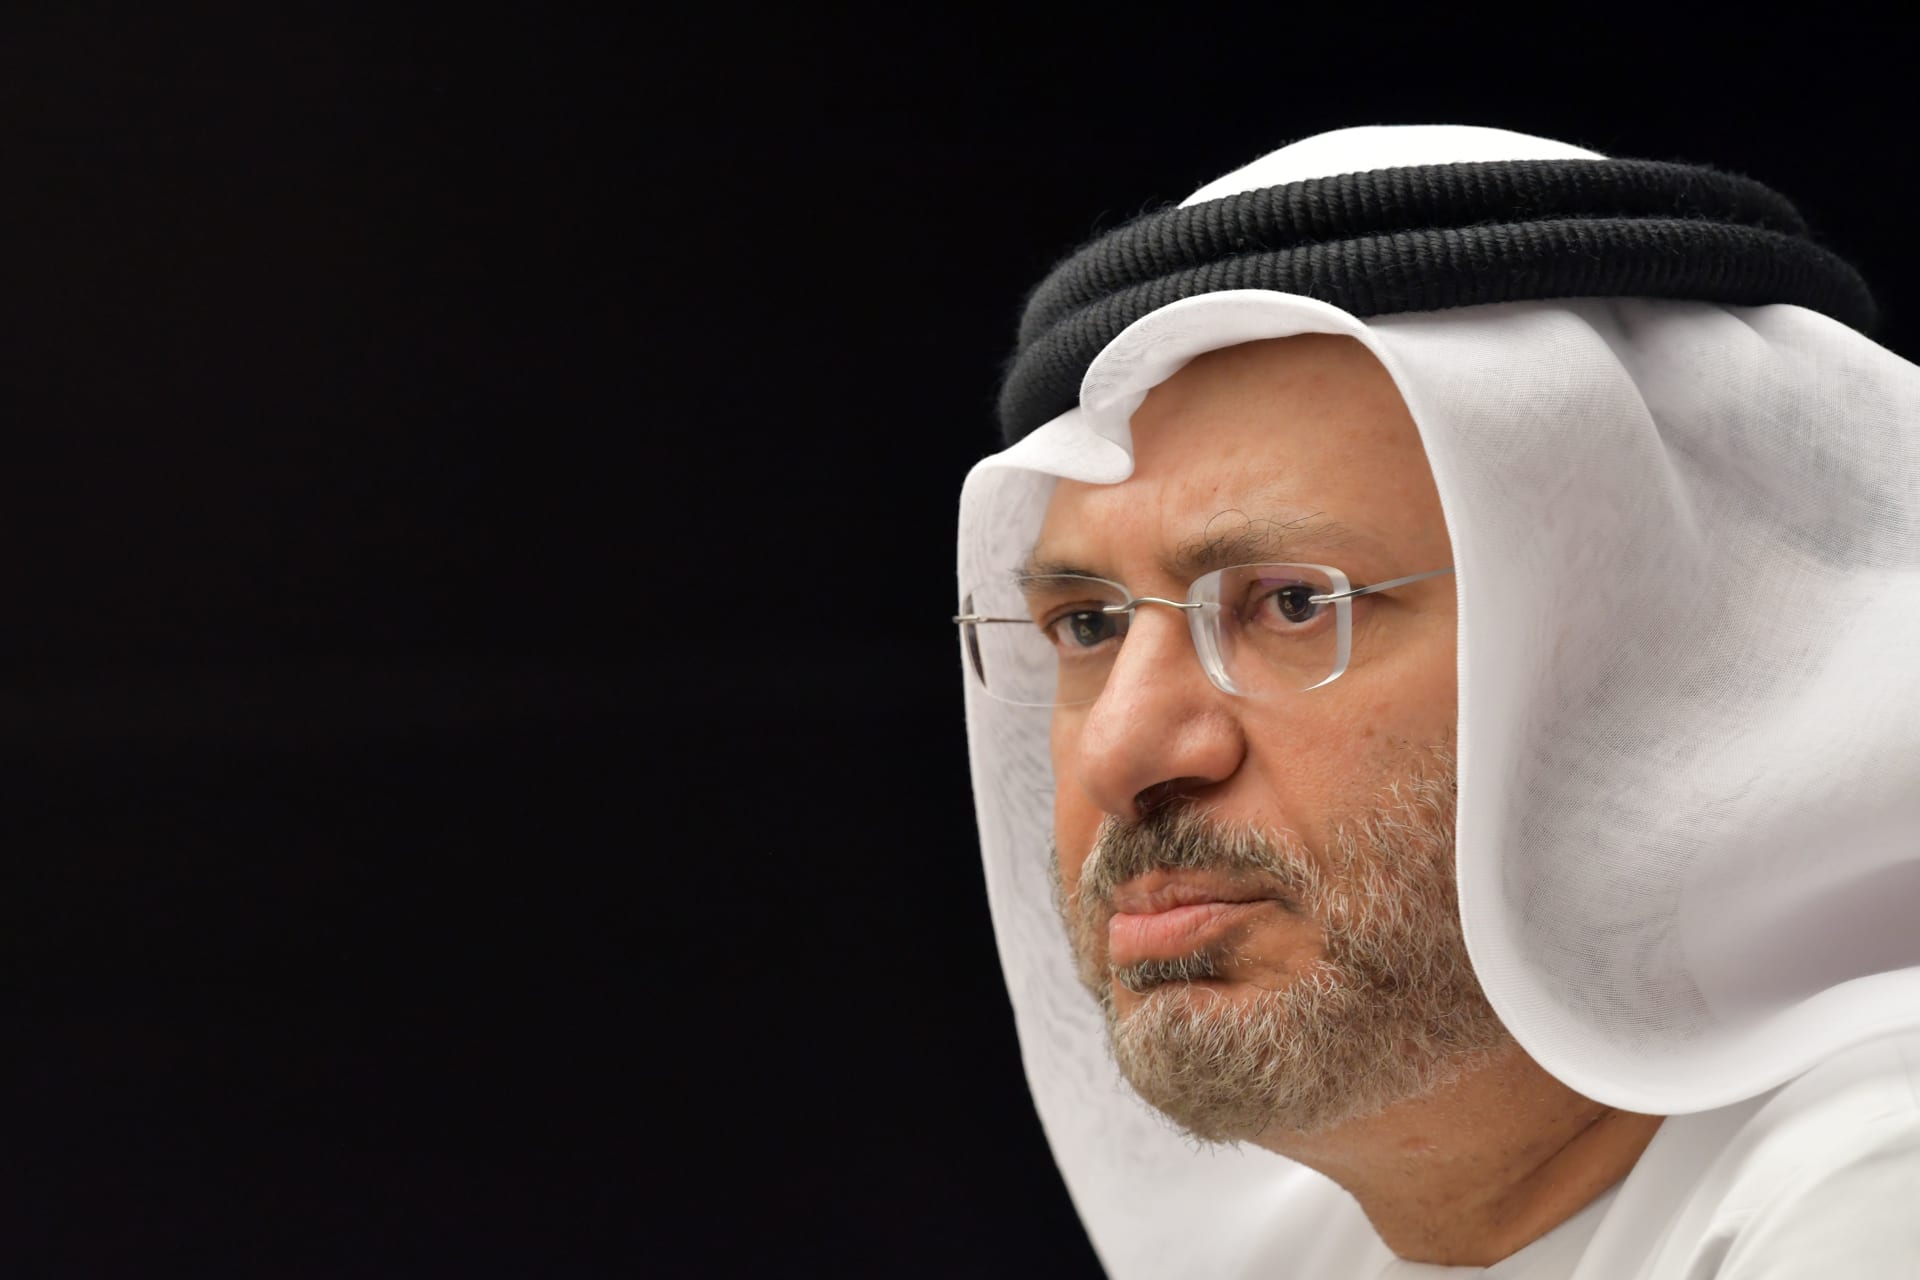 قرقاش من لندن: ثروة قطر تهديد بسبب دعمها الجهاديين ونريد رقابة دولية